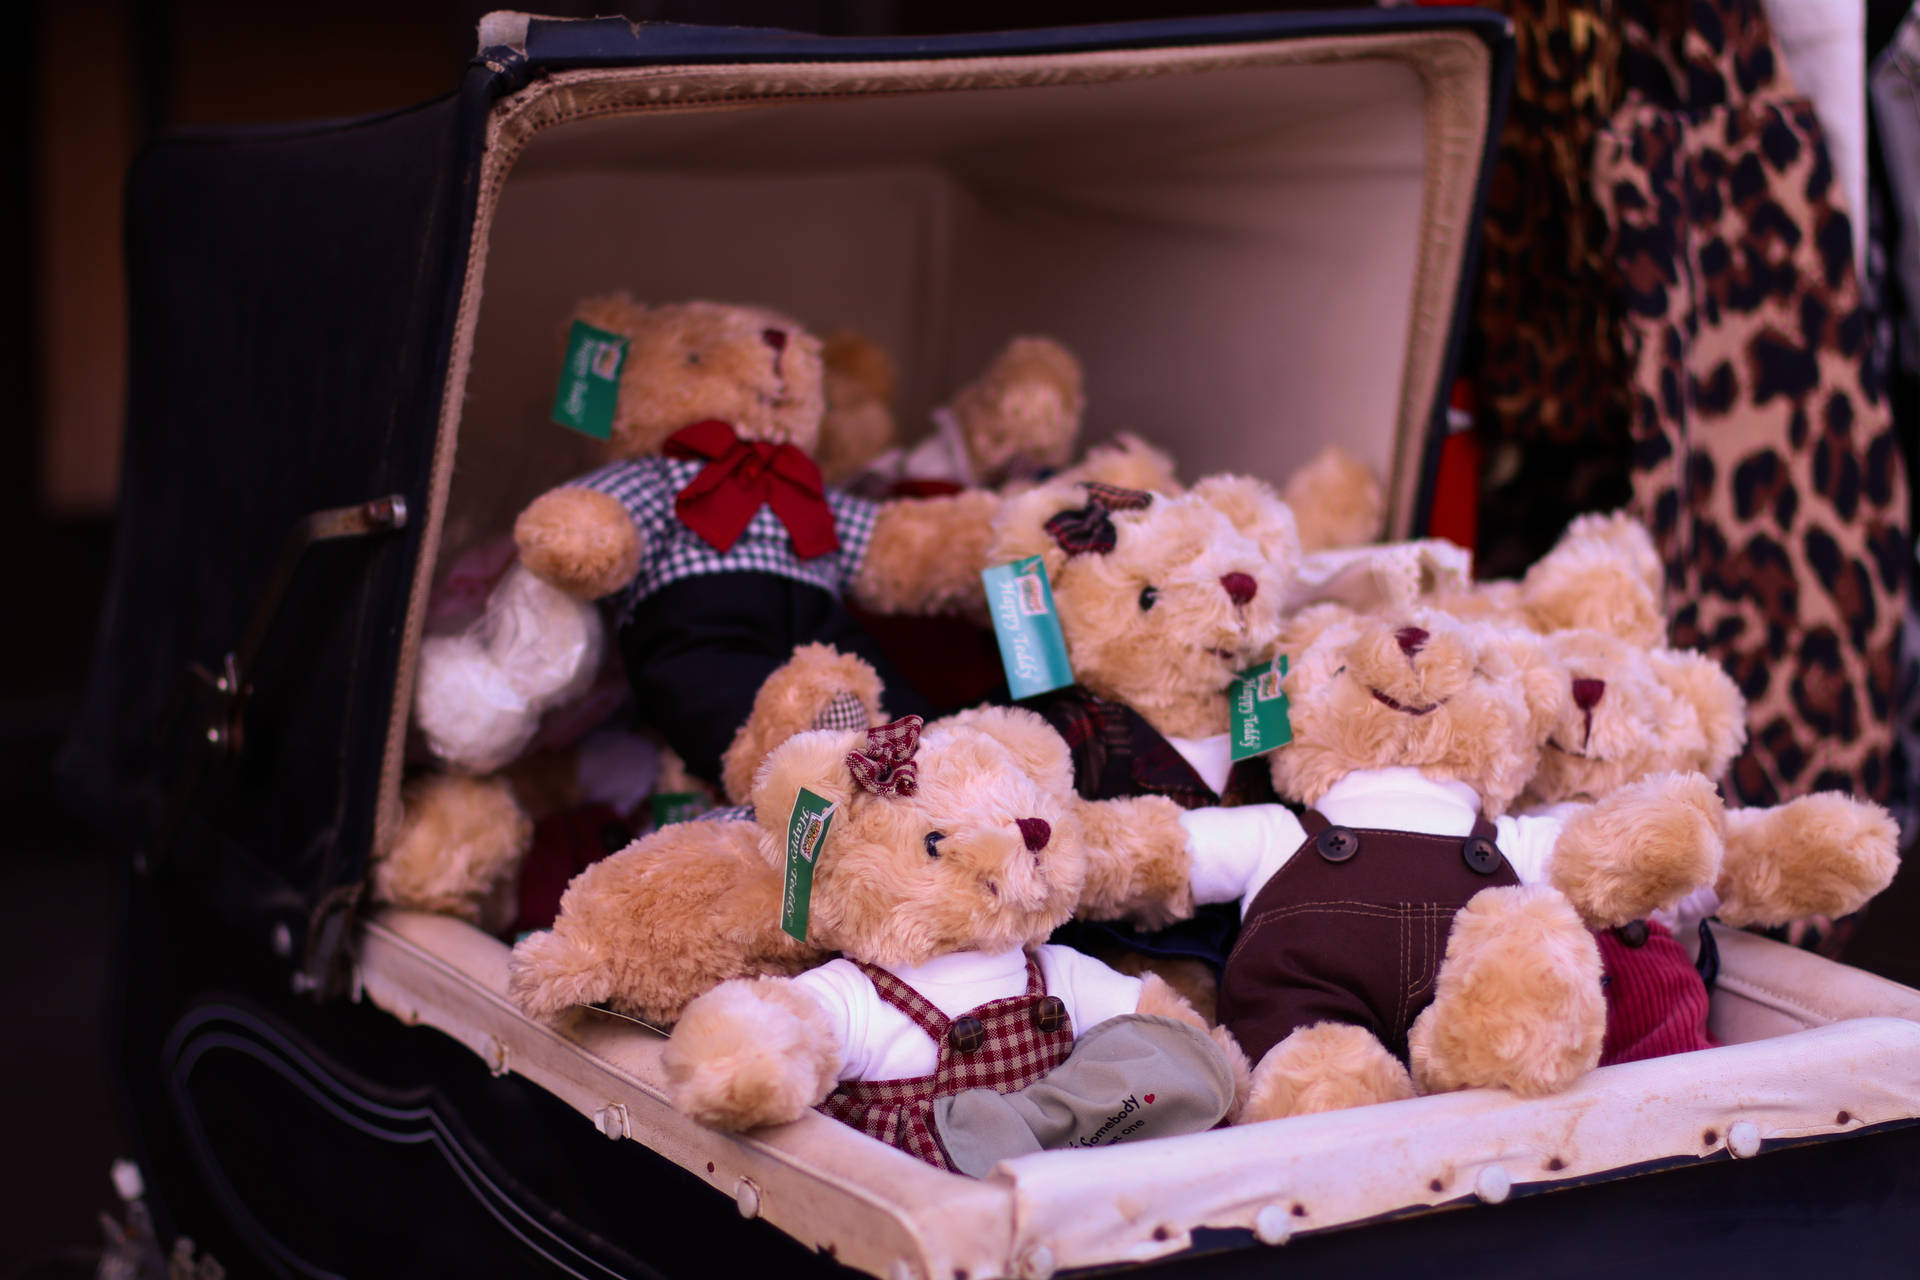 Cute Teddy Bear In A Box Background